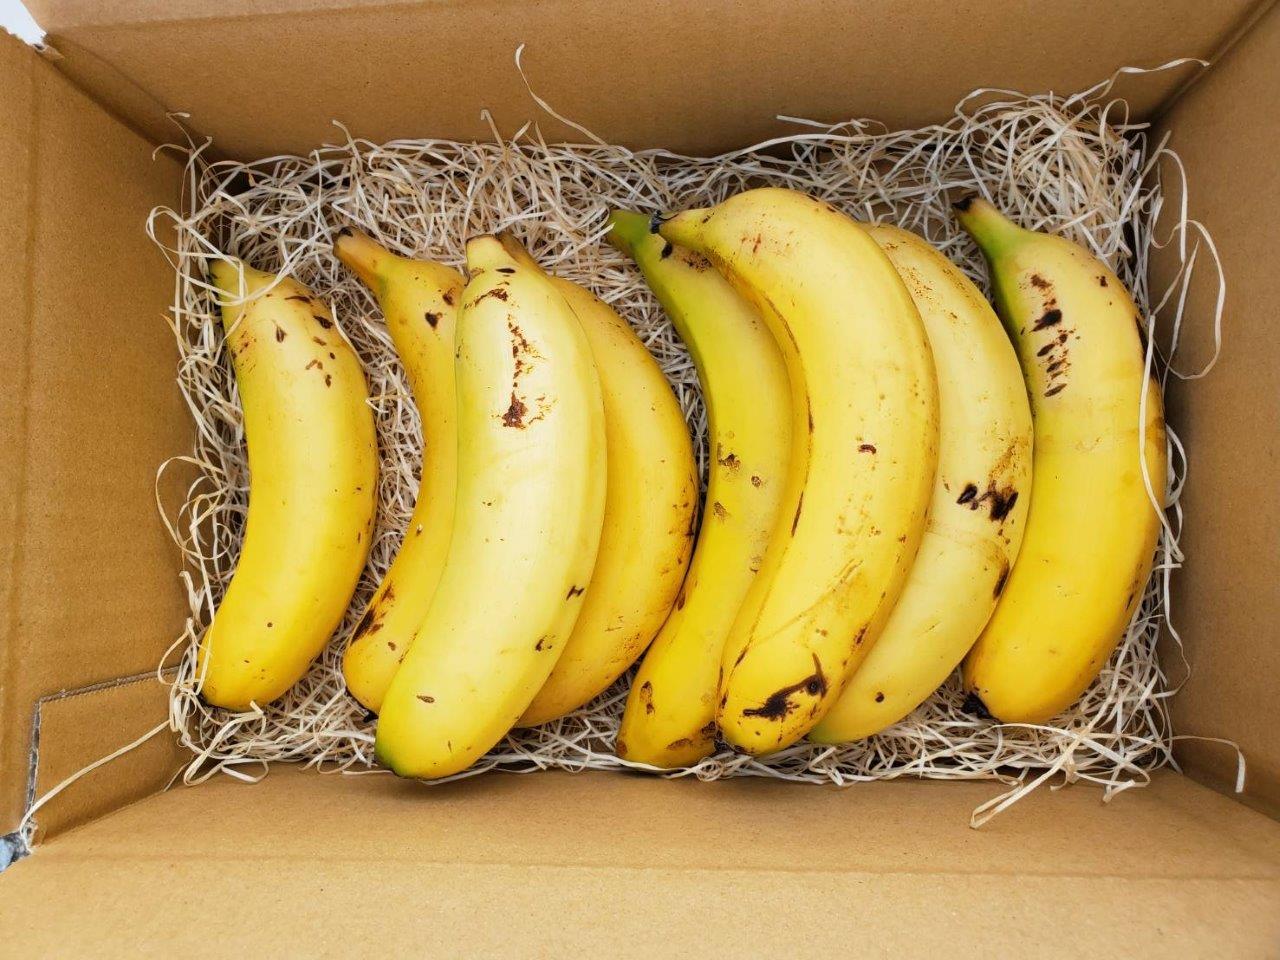 無農薬宮崎産バナナ「NEXT716」と「皮ごとバナナジャム」のセット 